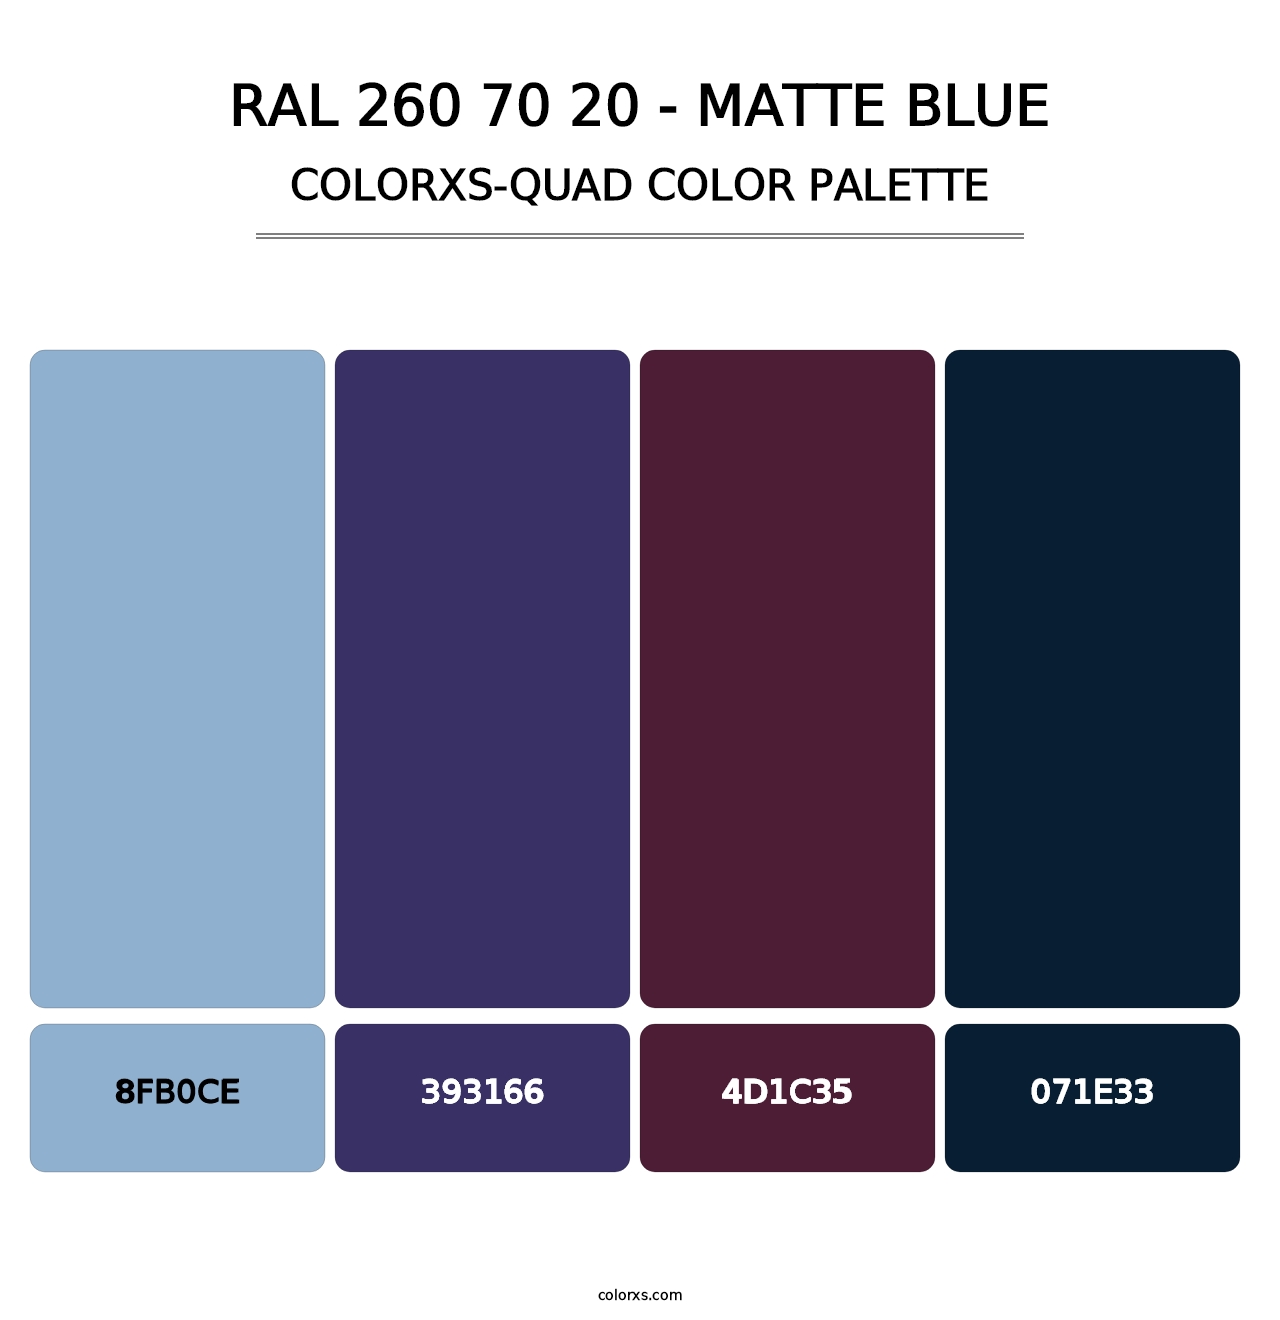 RAL 260 70 20 - Matte Blue - Colorxs Quad Palette